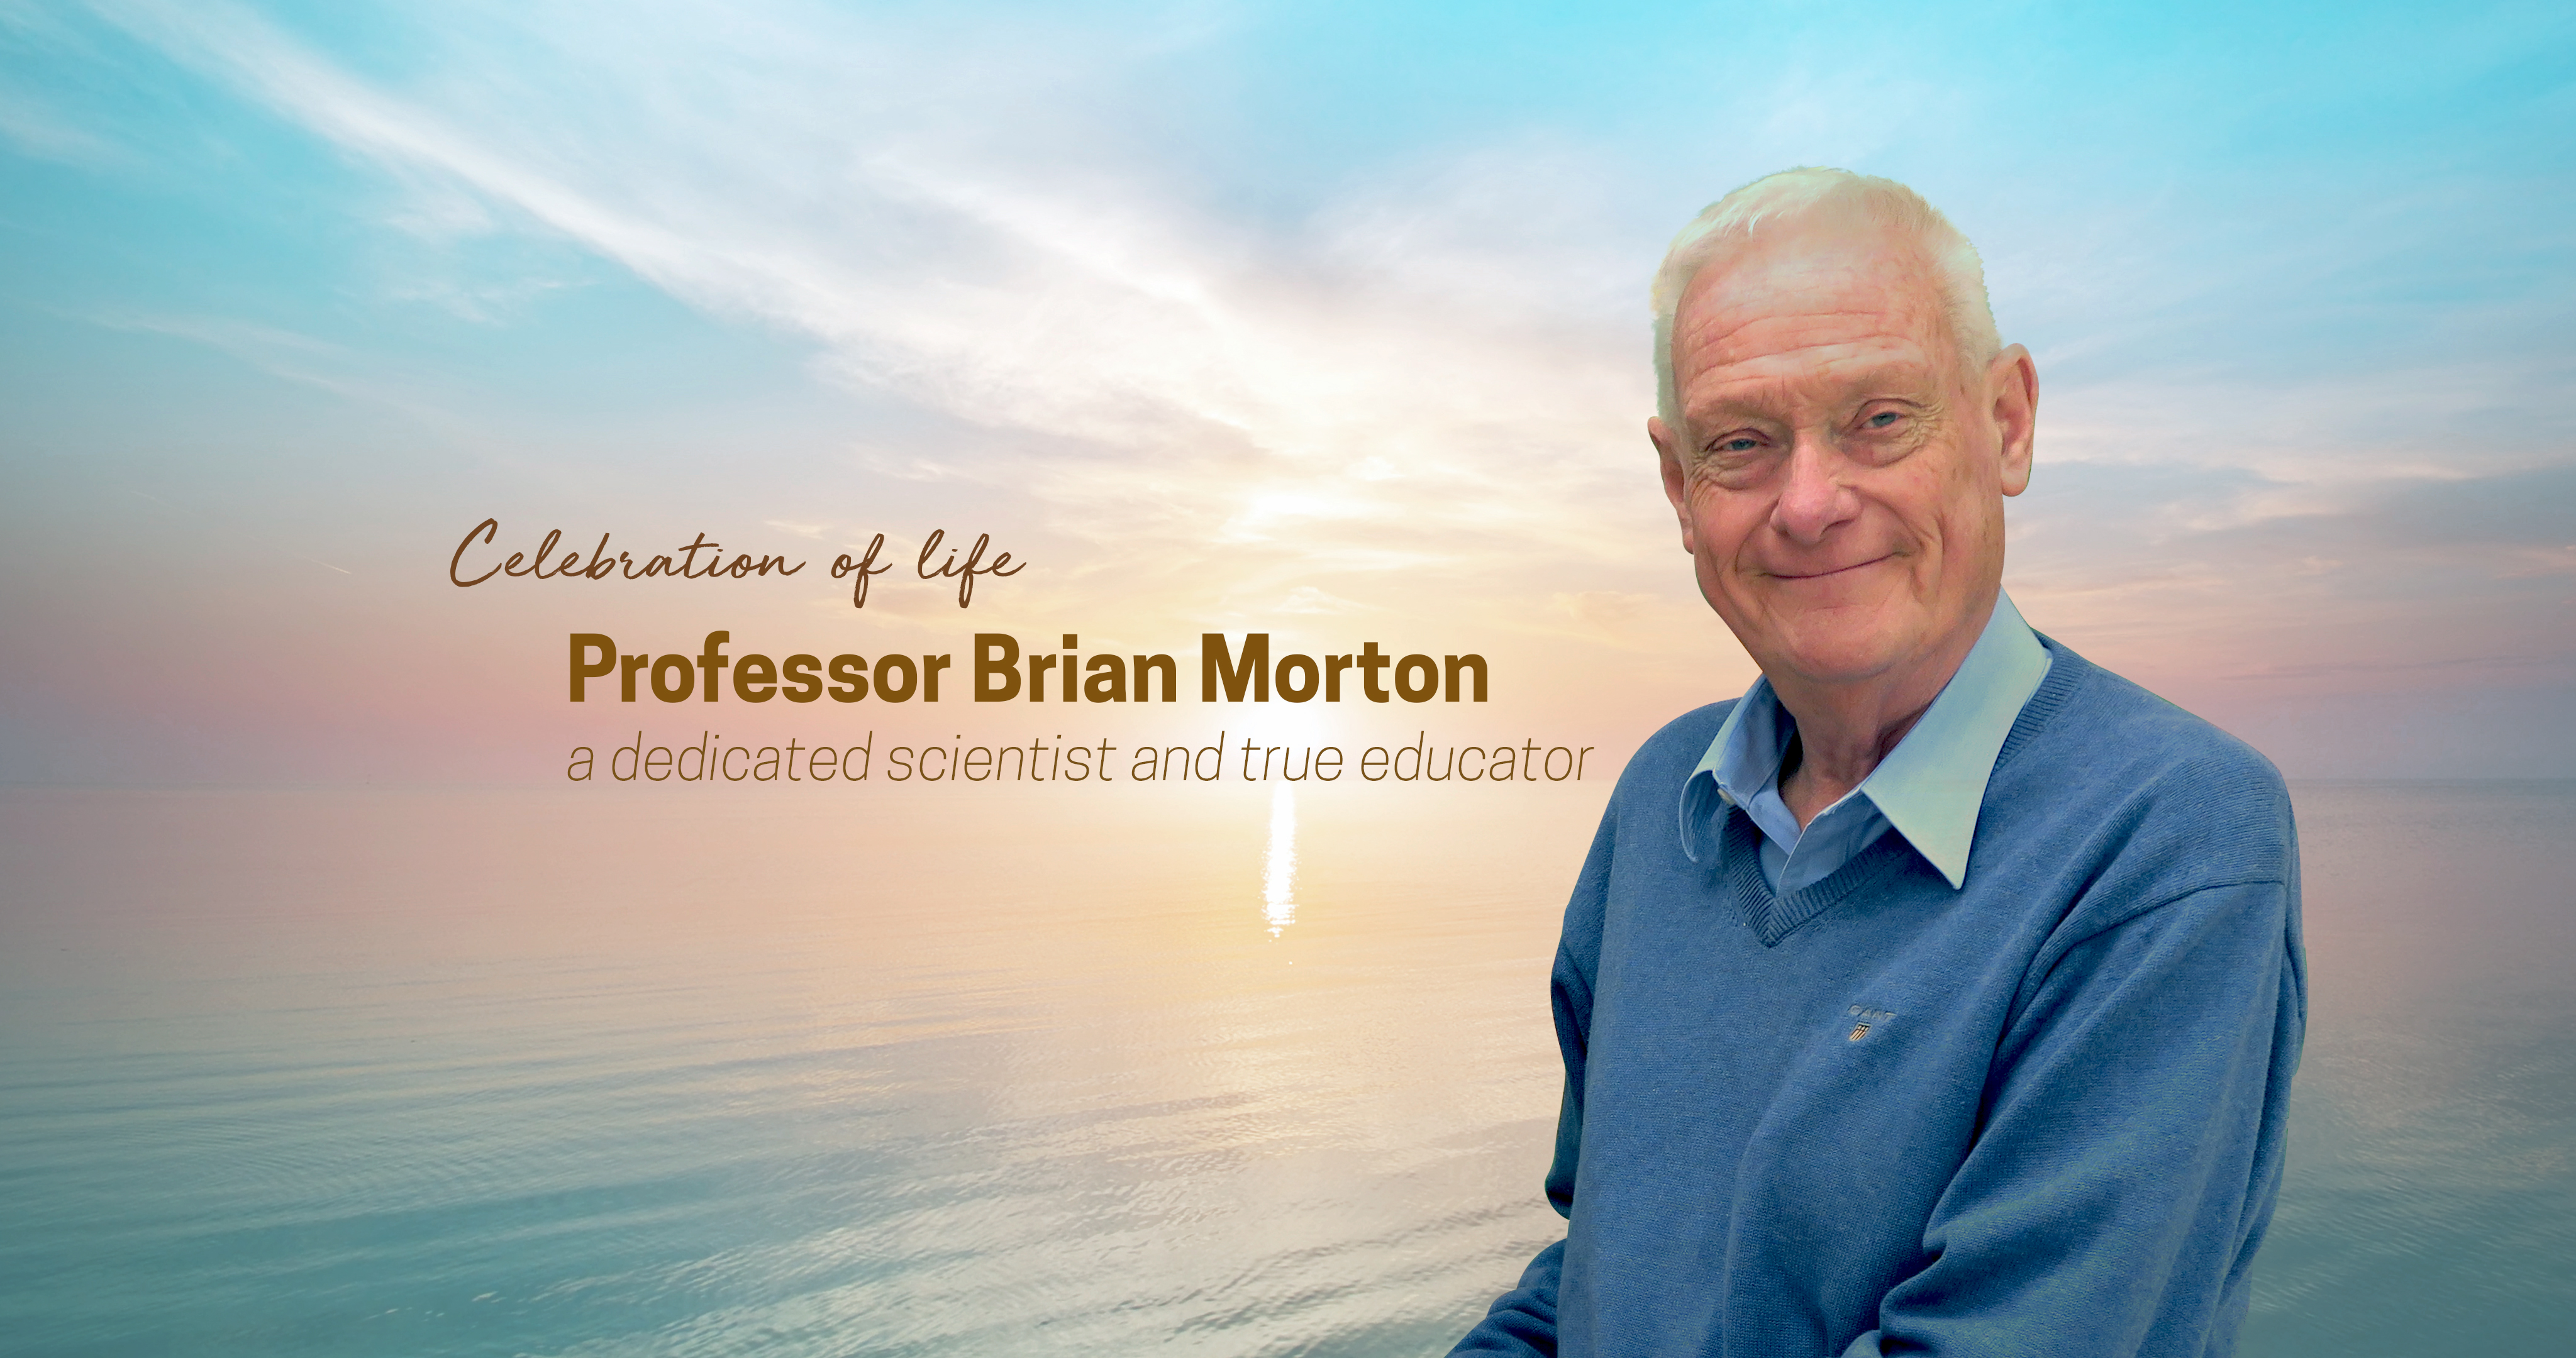 Professor Brian Morton